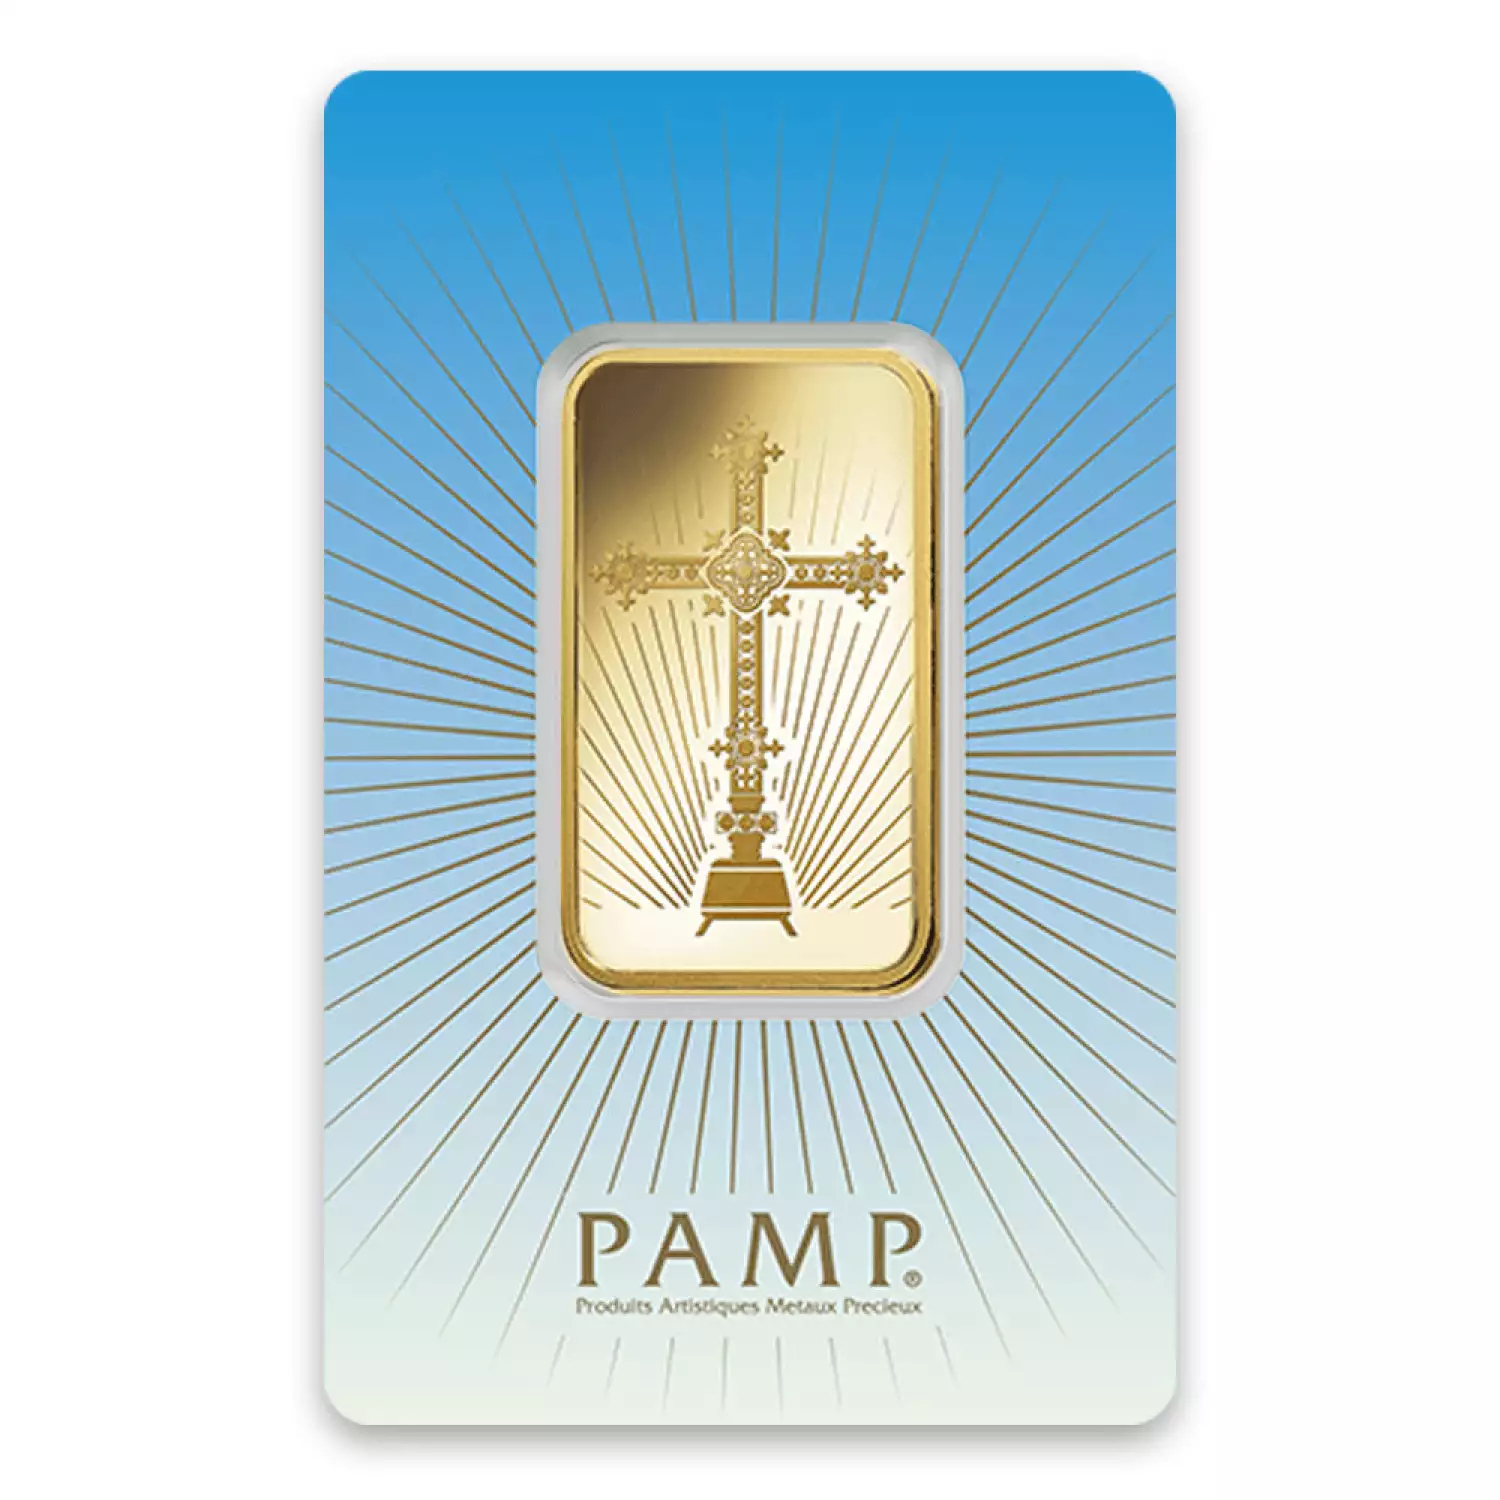 1oz PAMP Gold Bar - Romanesque Cross (3)